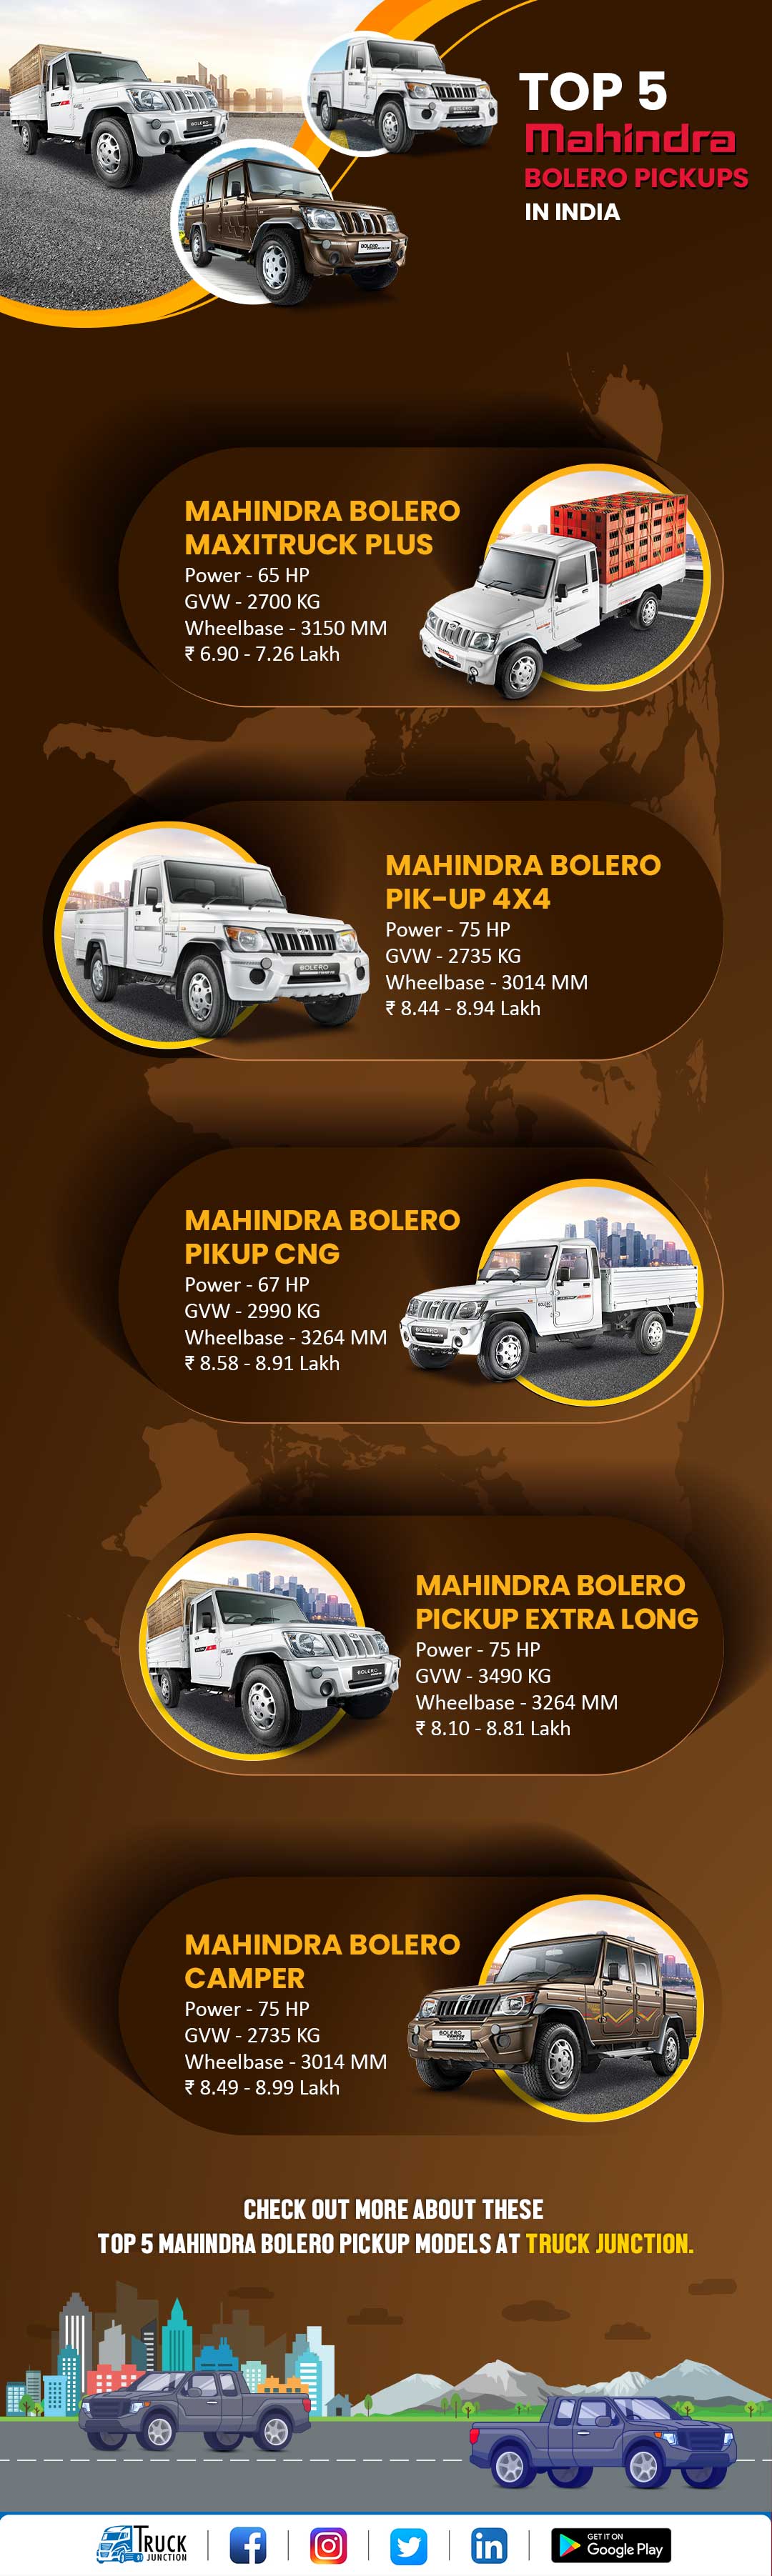 Top 5 Mahindra Bolero Pickup Models In India - infographic